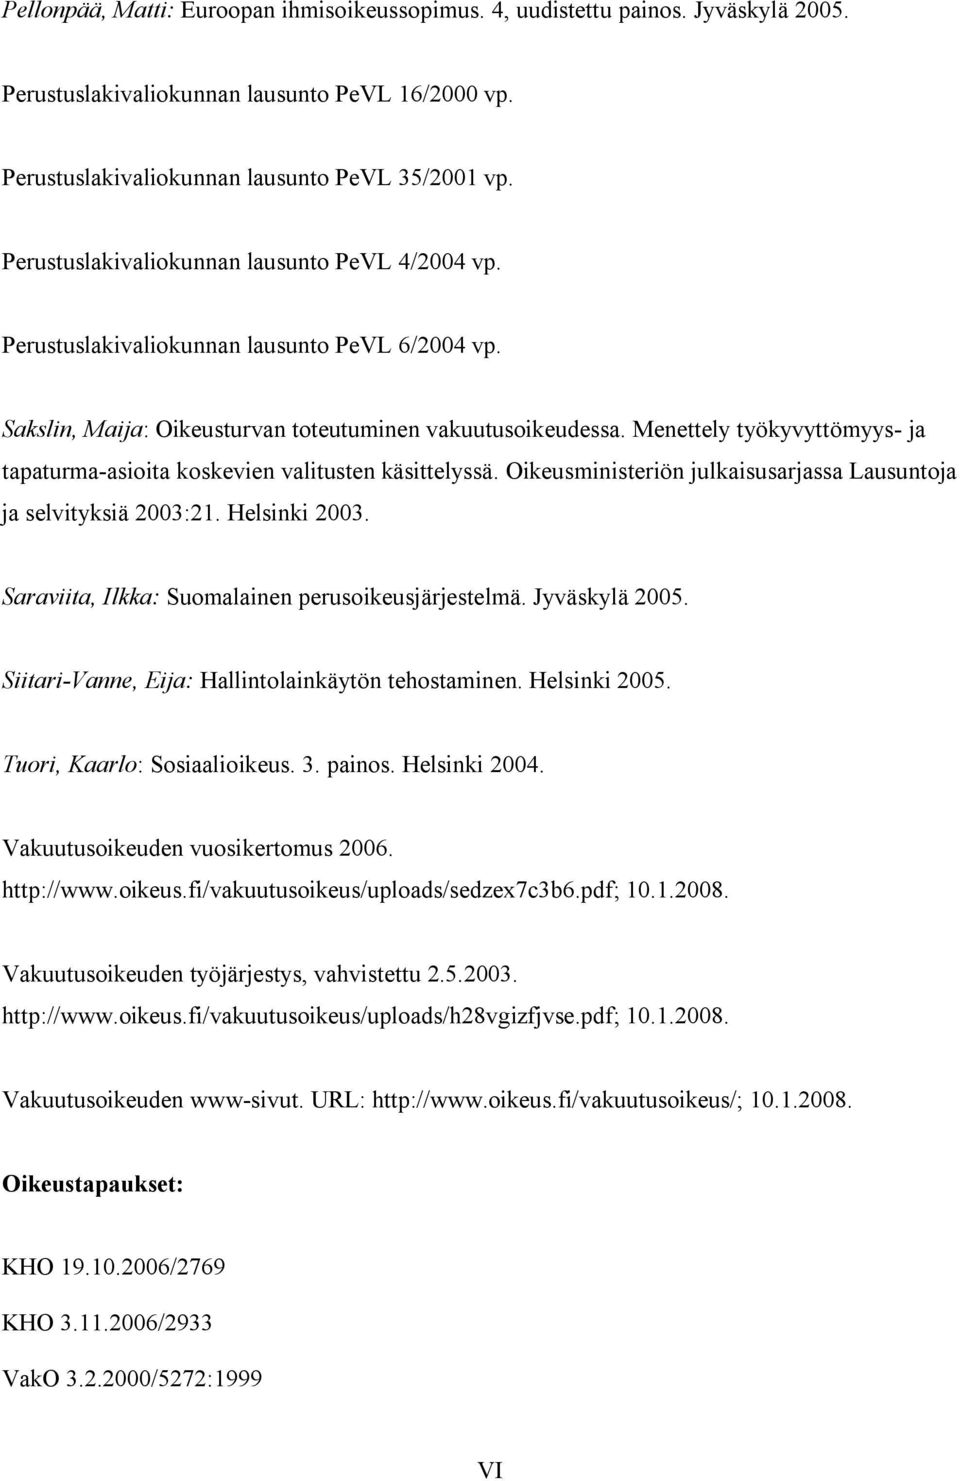 Menettely työkyvyttömyys- ja tapaturma-asioita koskevien valitusten käsittelyssä. Oikeusministeriön julkaisusarjassa Lausuntoja ja selvityksiä 2003:21. Helsinki 2003.